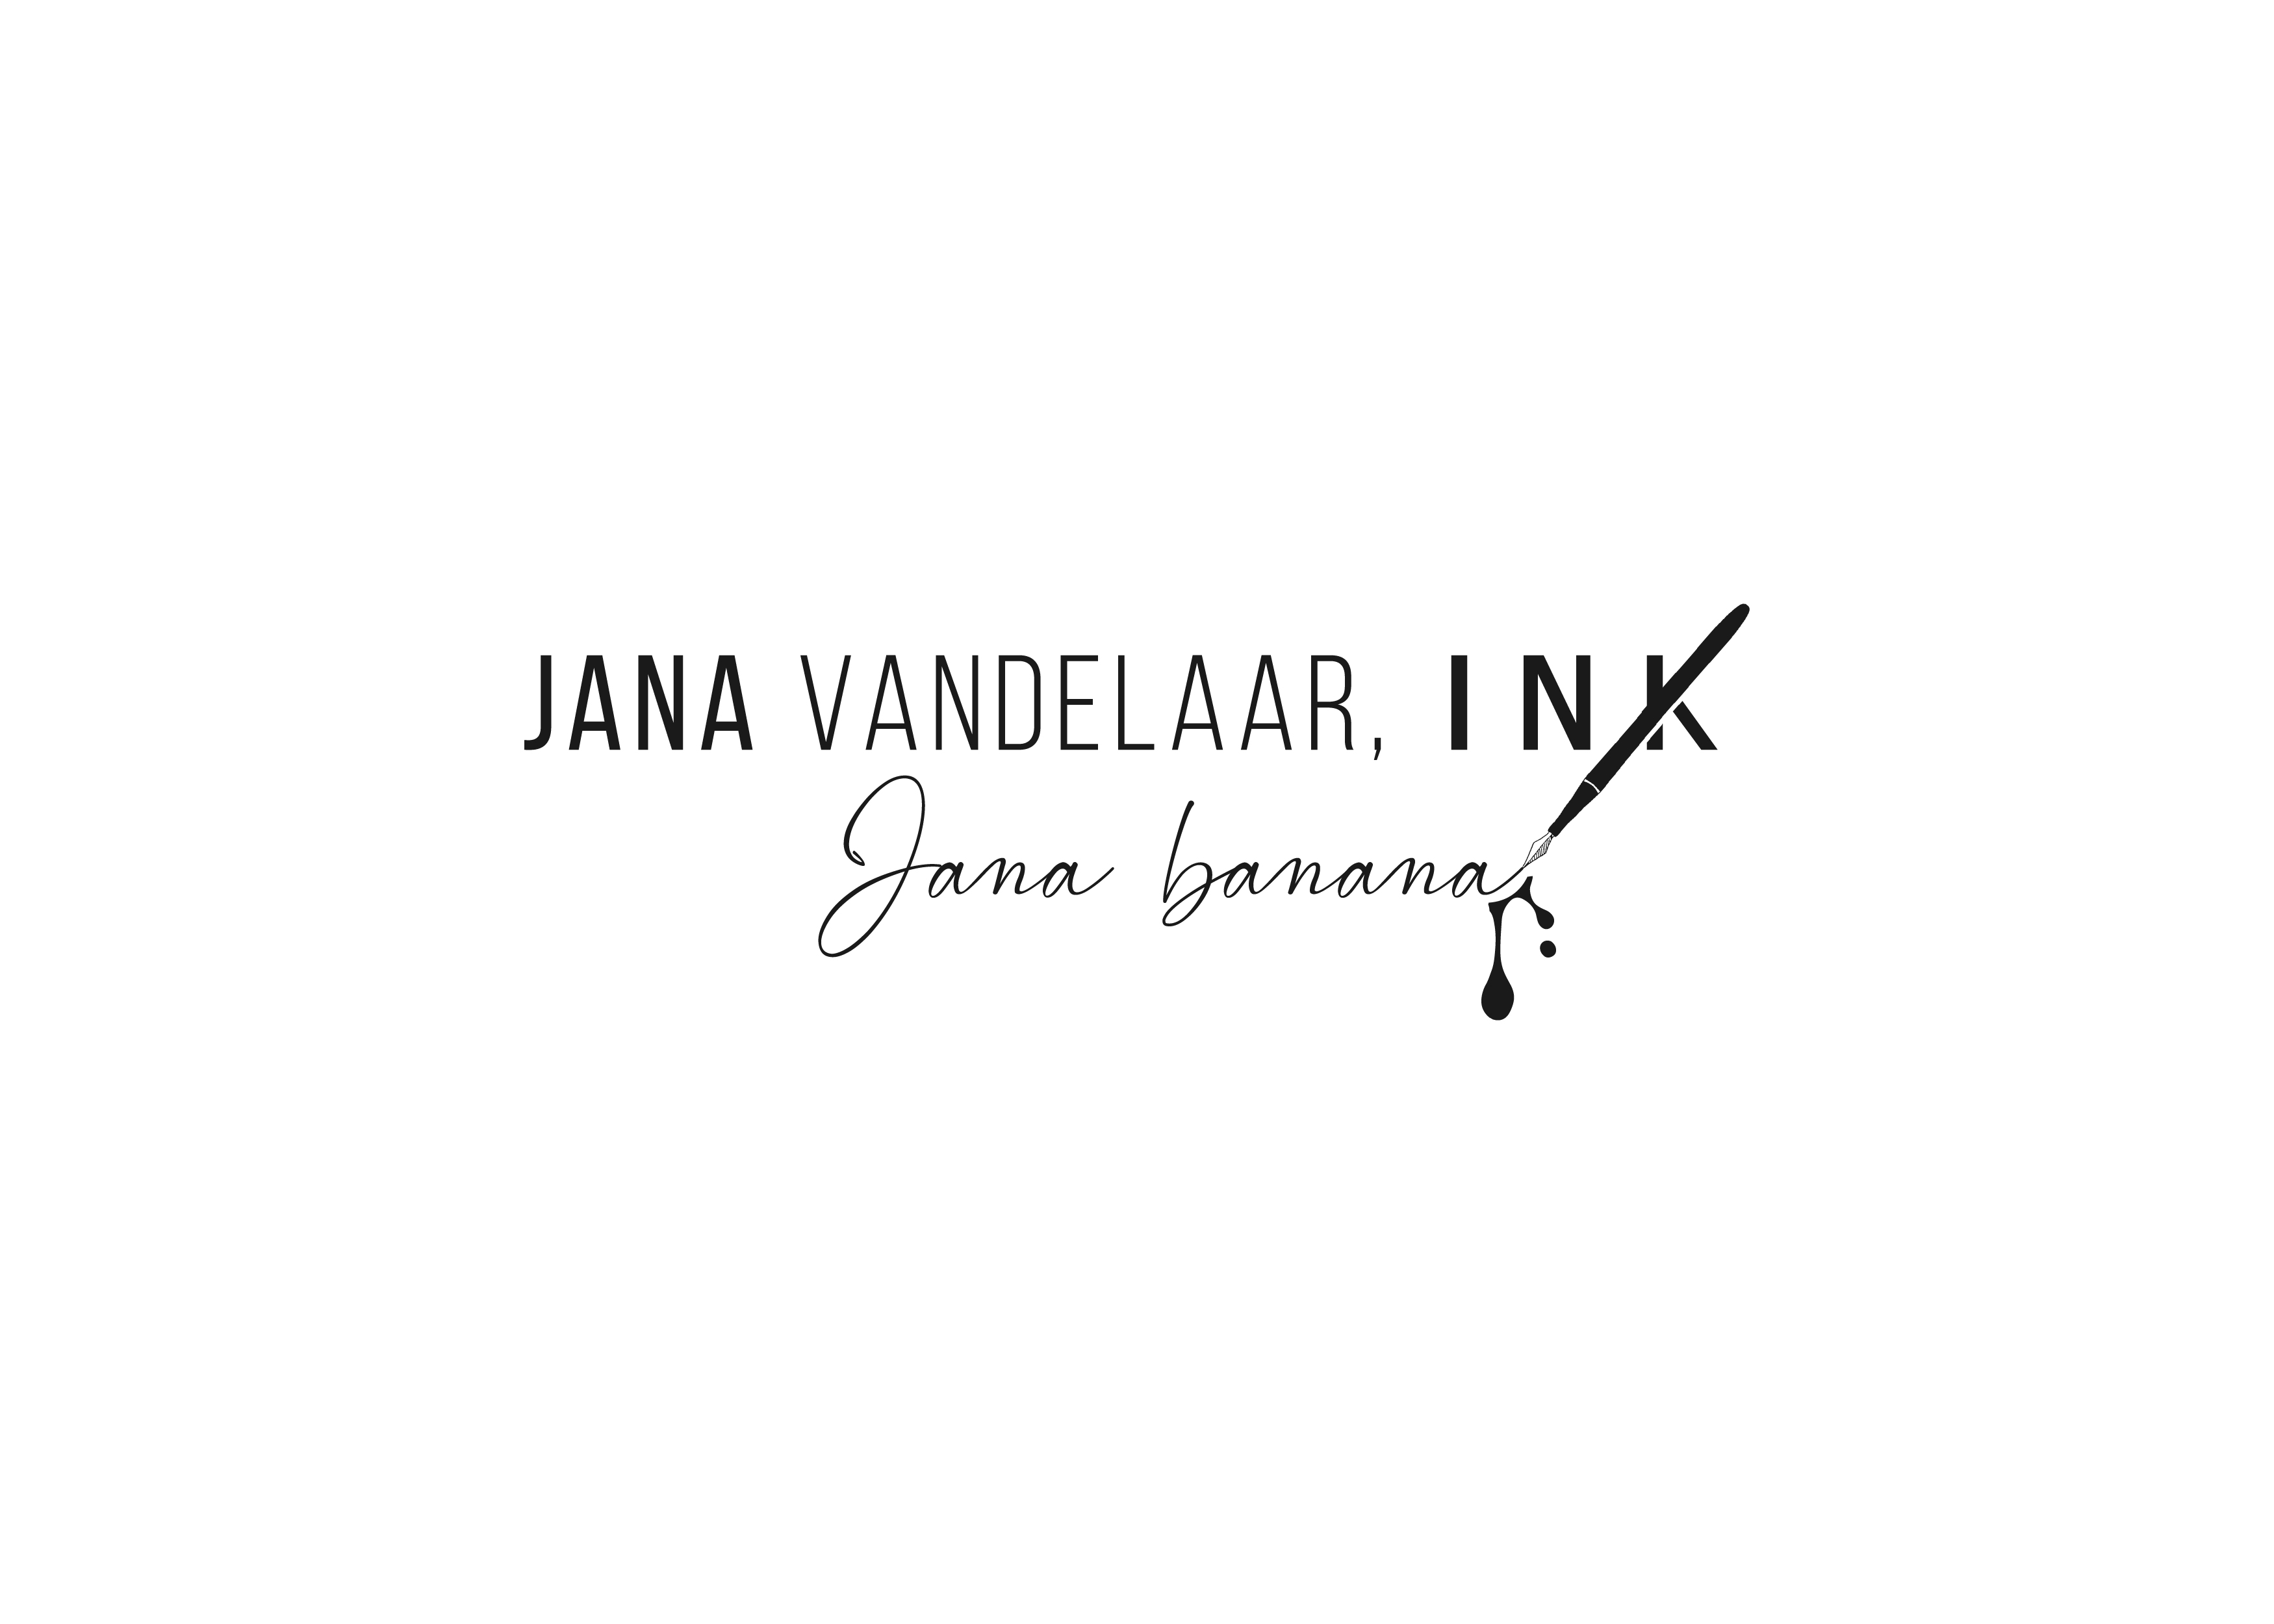 Logo Design entry 2191930 submitted by Priory to the Logo Design for Jana Vandelaar, Ink run by janavandelaar